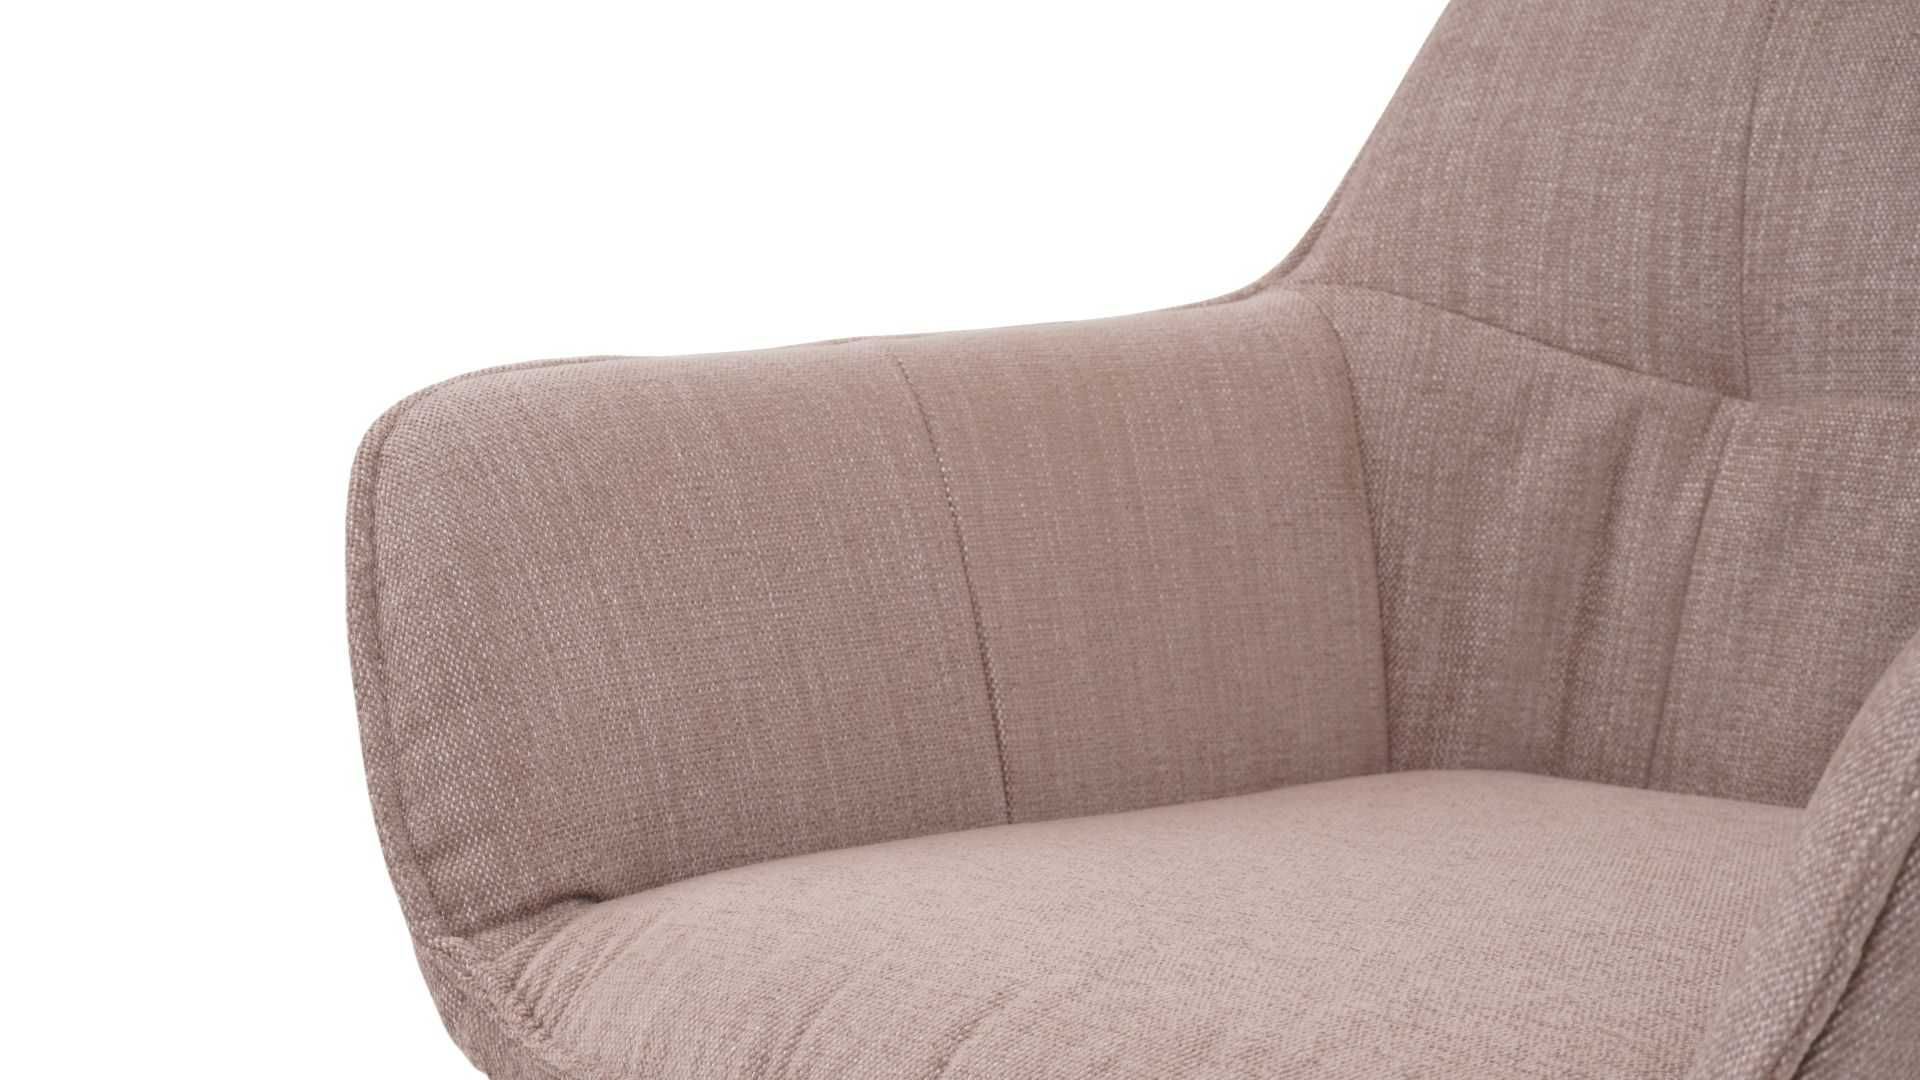 Krzesło Gaya obrotowe na metalowych nogach w tkaninie Naomi 134